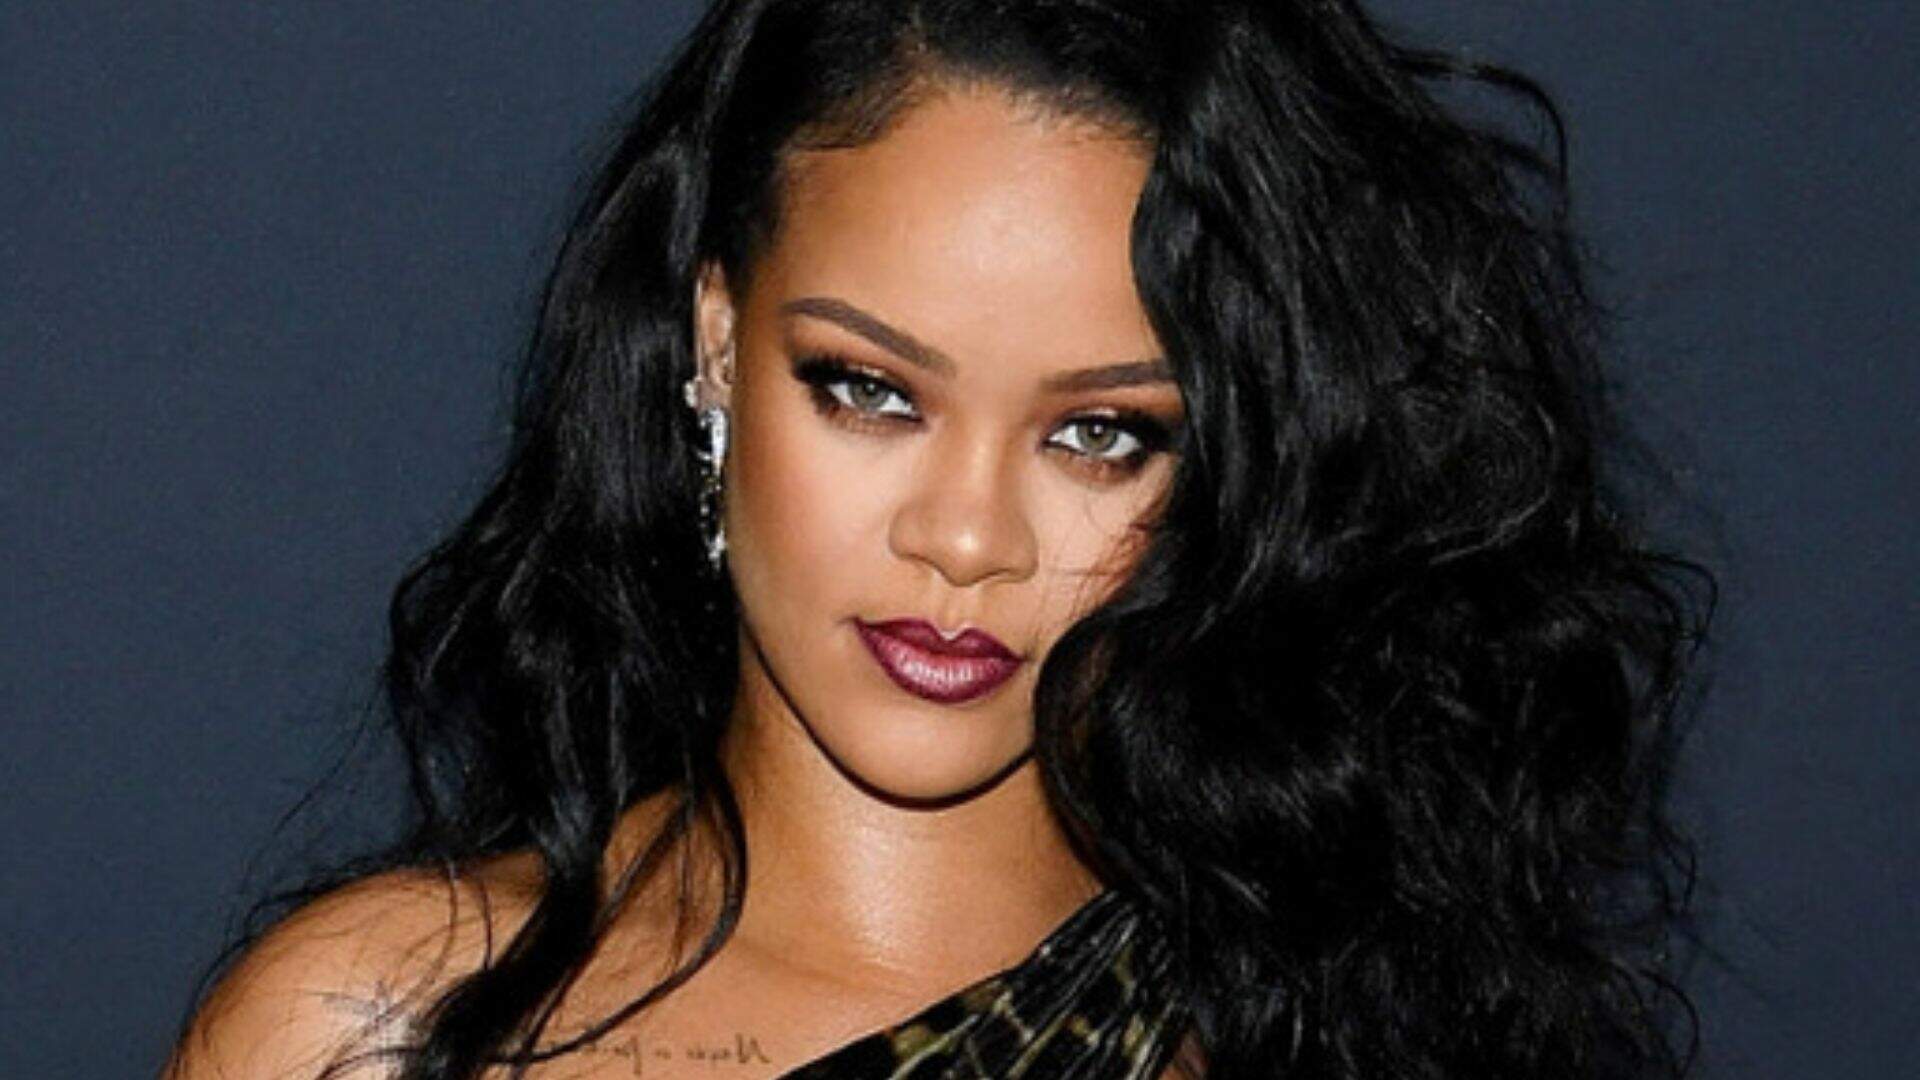 Rihanna usa minissaia com bota polêmica e look divide opiniões - Metropolitana FM